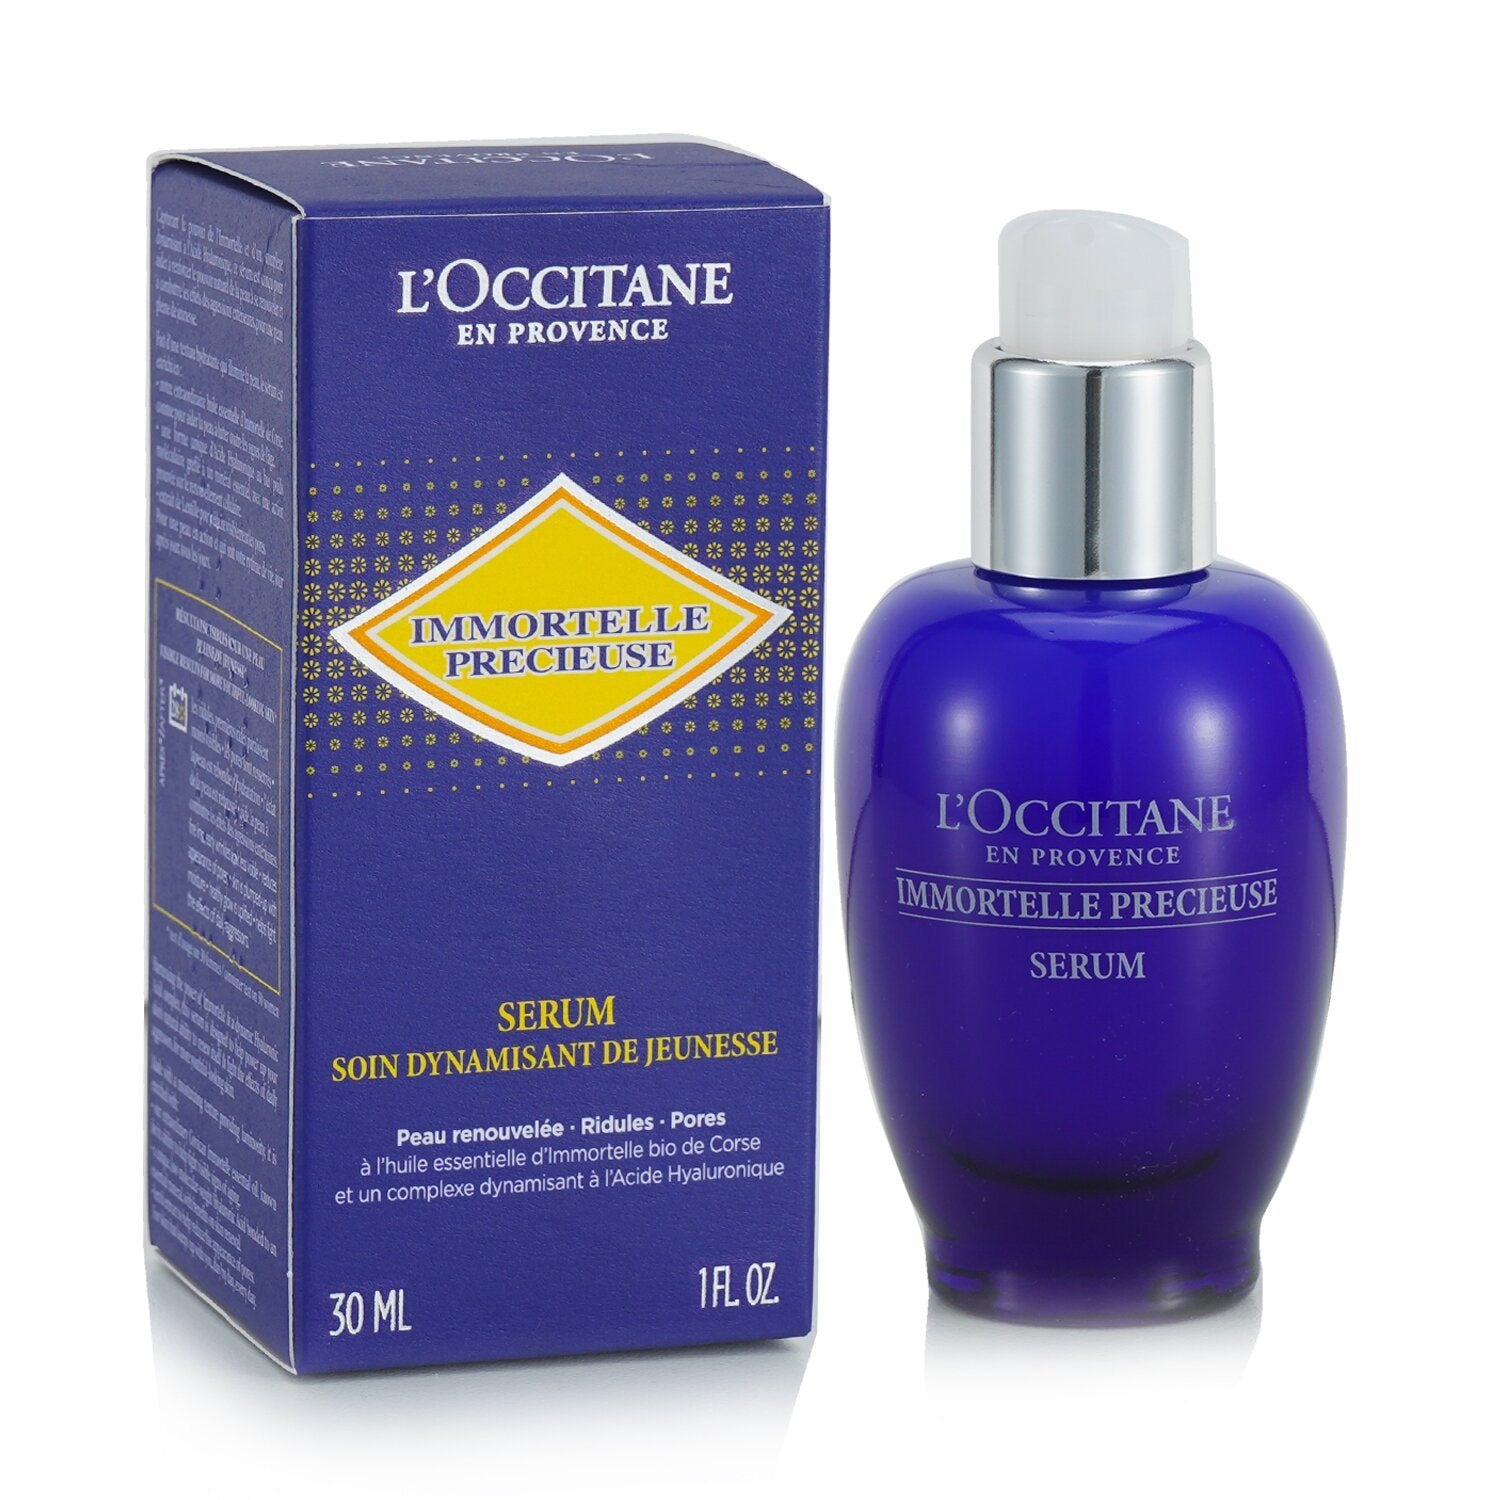 L'OCCITANE - Immortelle Precious Serum - 30ml/1oz 3P's Inclusive Beauty